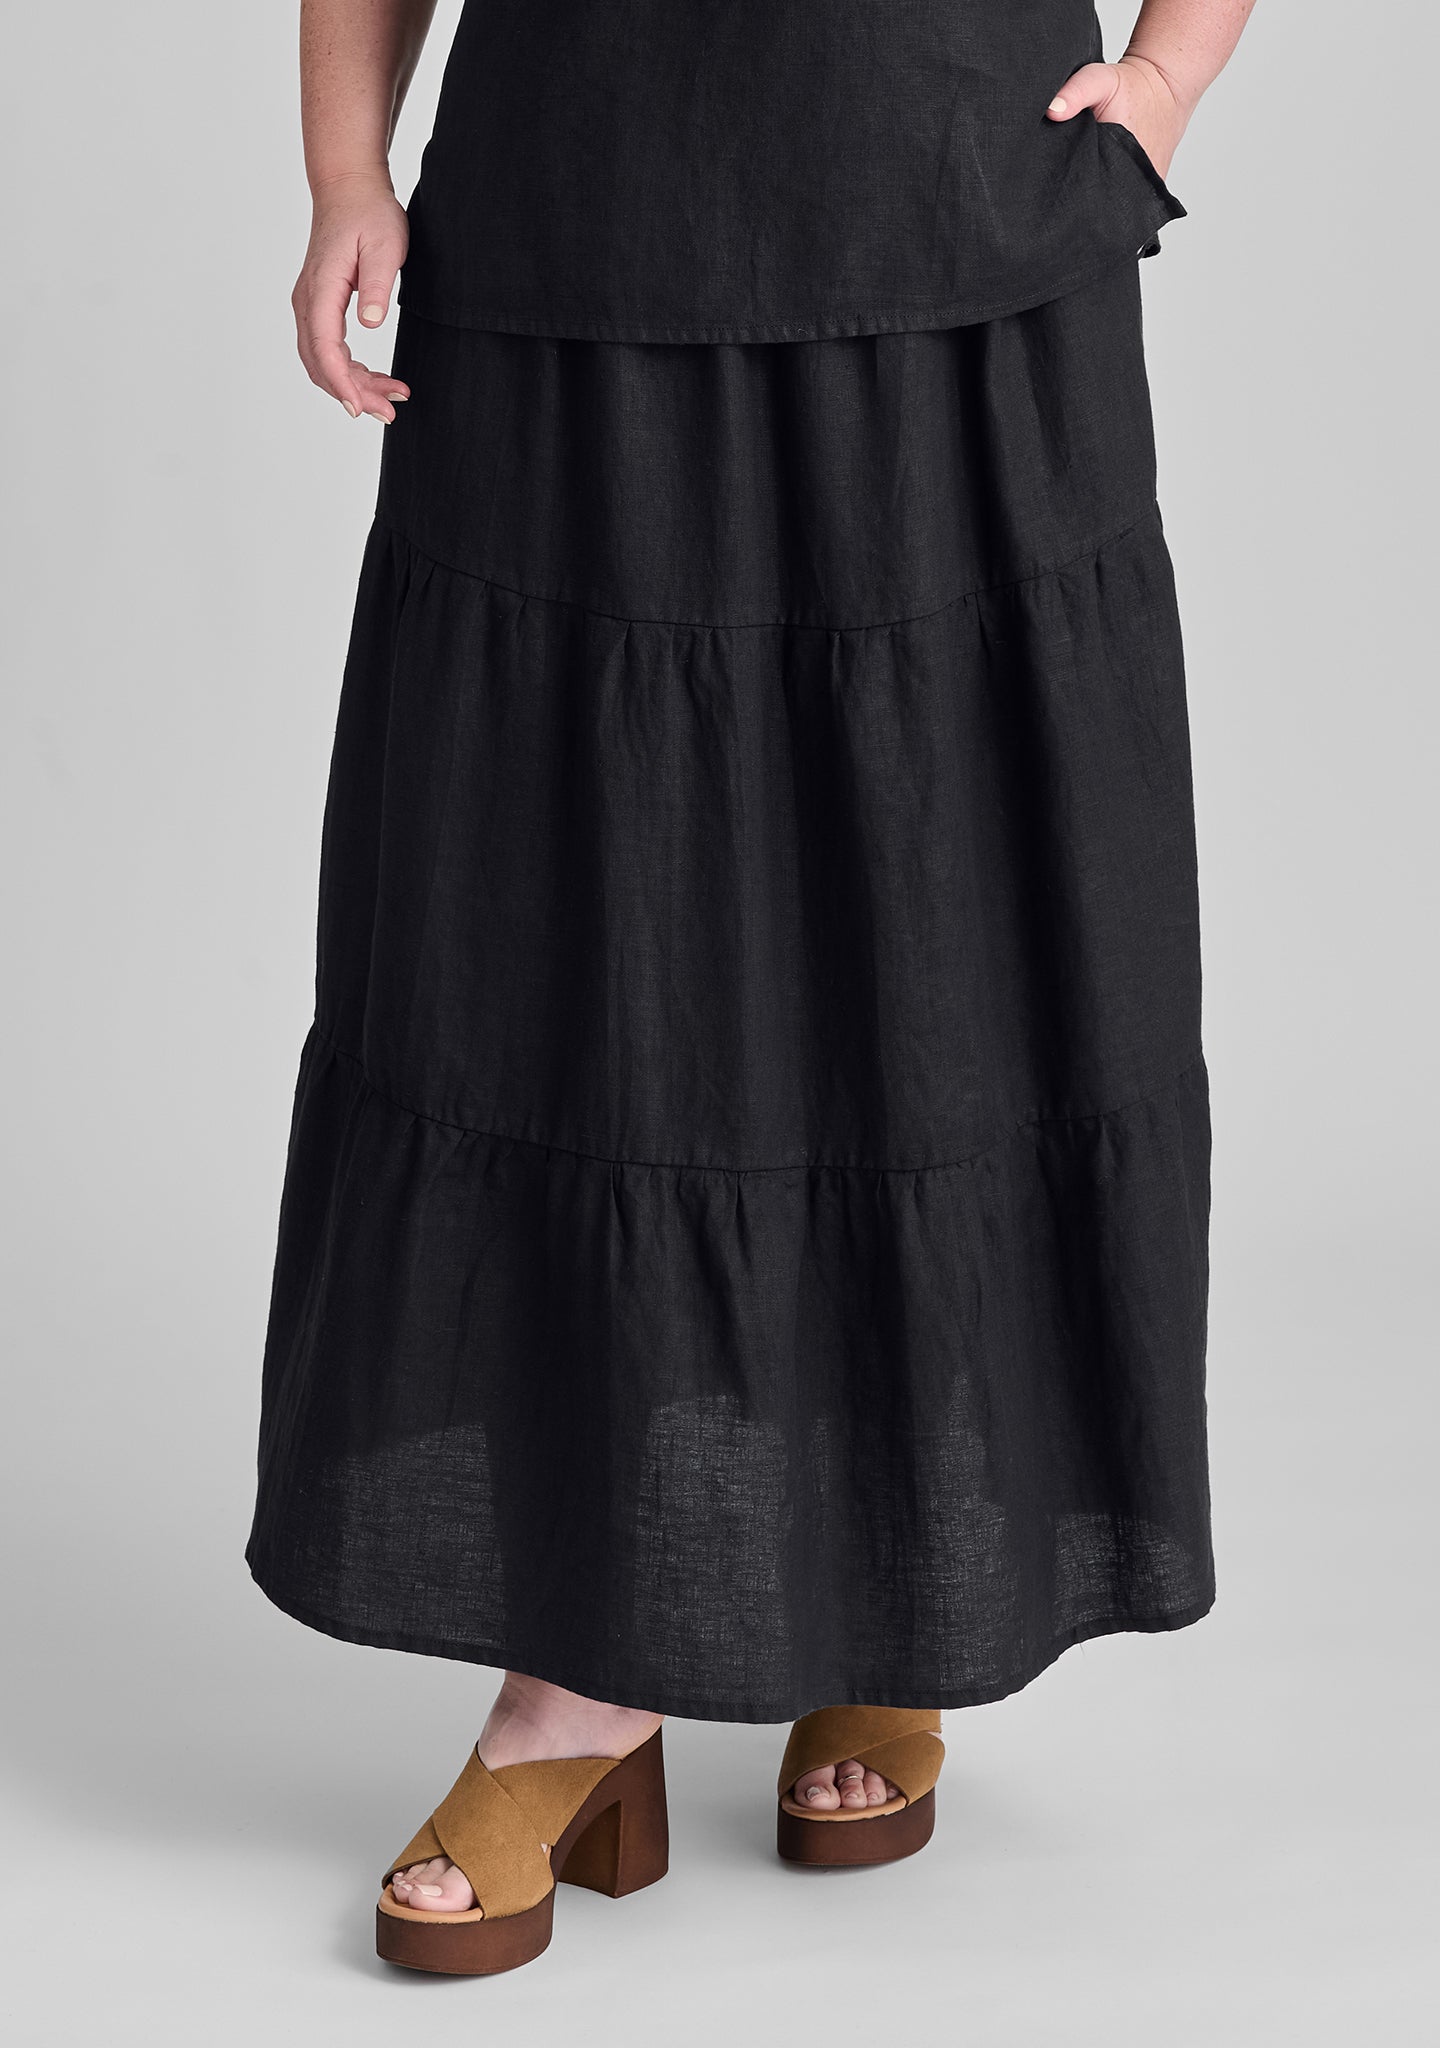 gaia skirt linen maxi skirt black